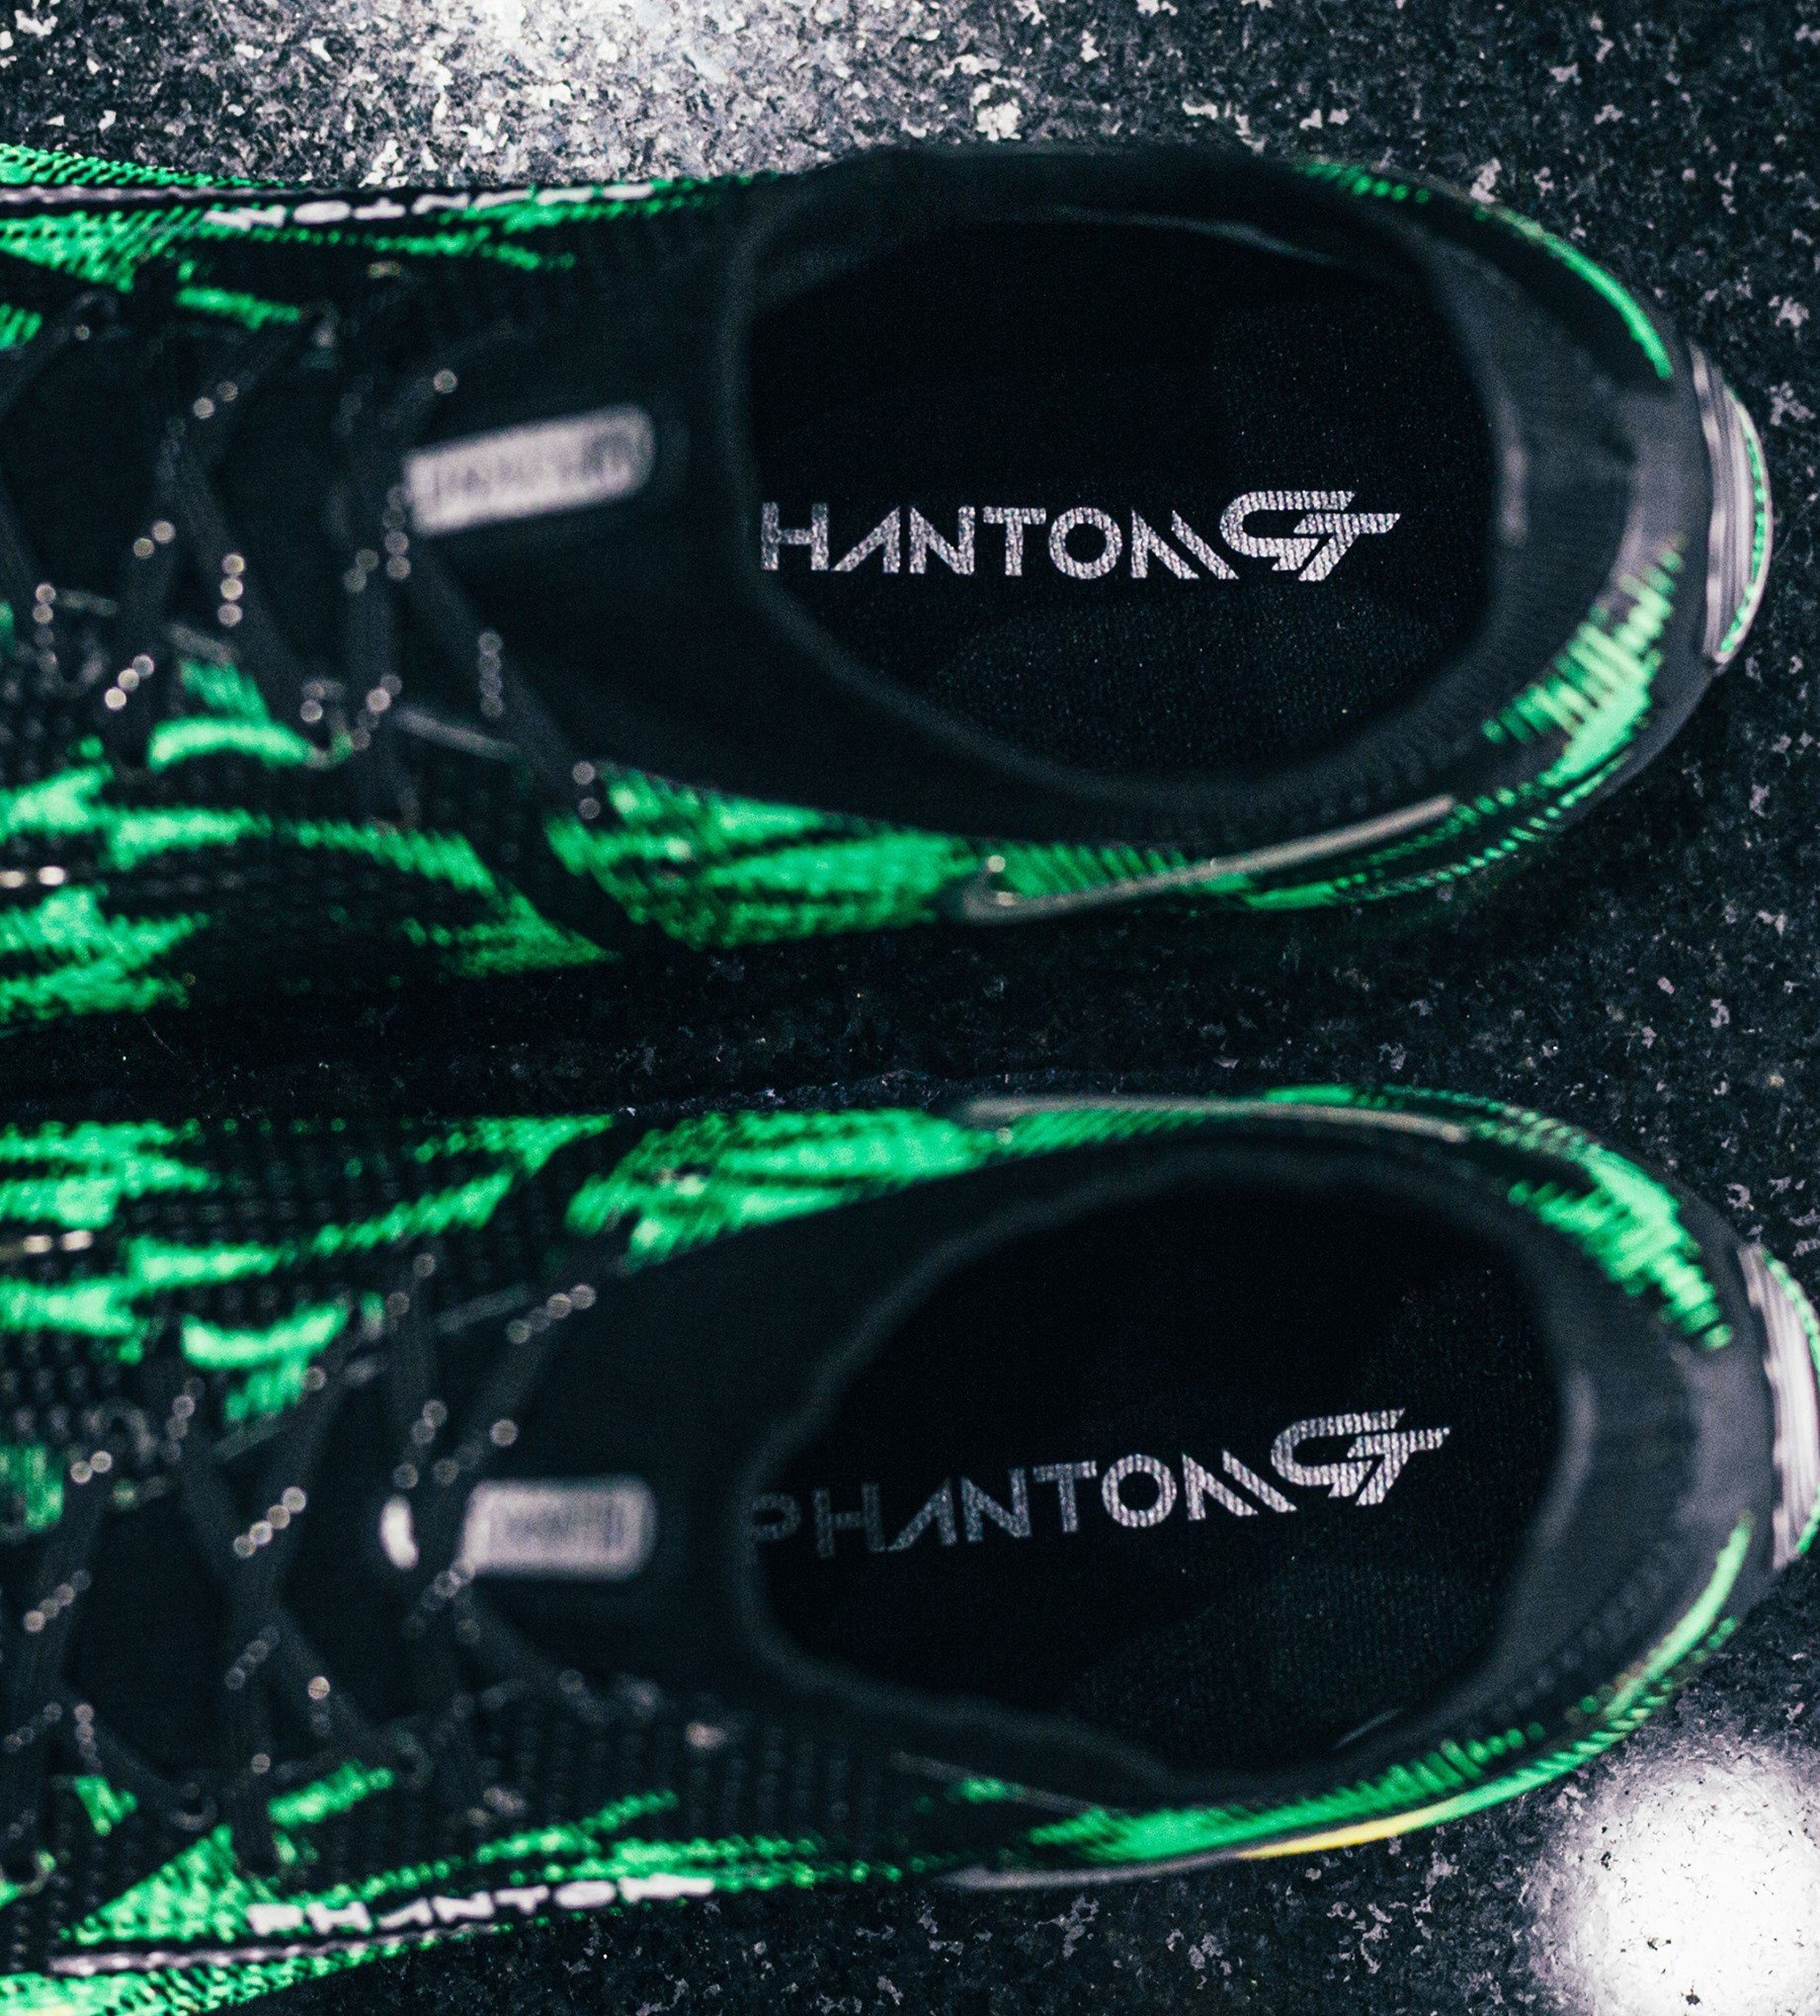 Công nghệ nổi bật của giày đá banh Nike Phantom GT II 'Shockwave'